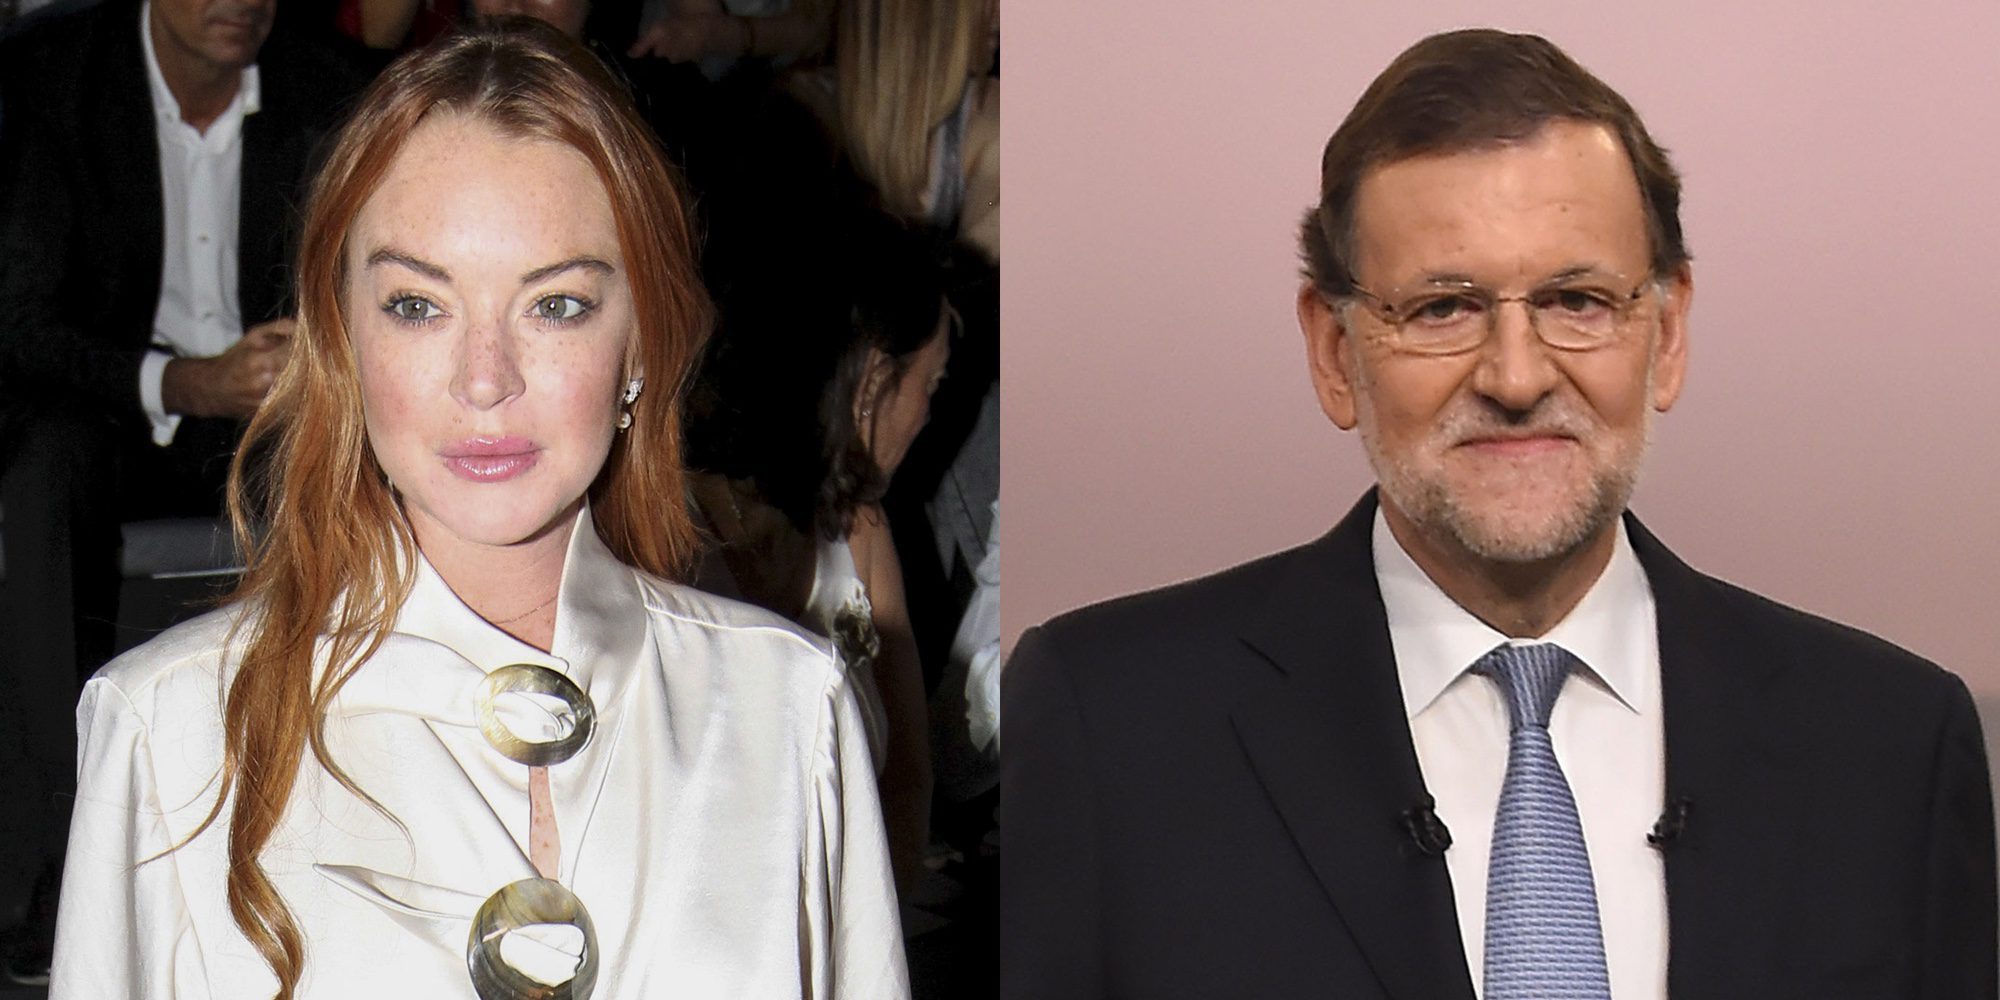 Lindsay Lohan está interesada en Mariano Rajoy: Ha empezado a seguirle en las redes sociales